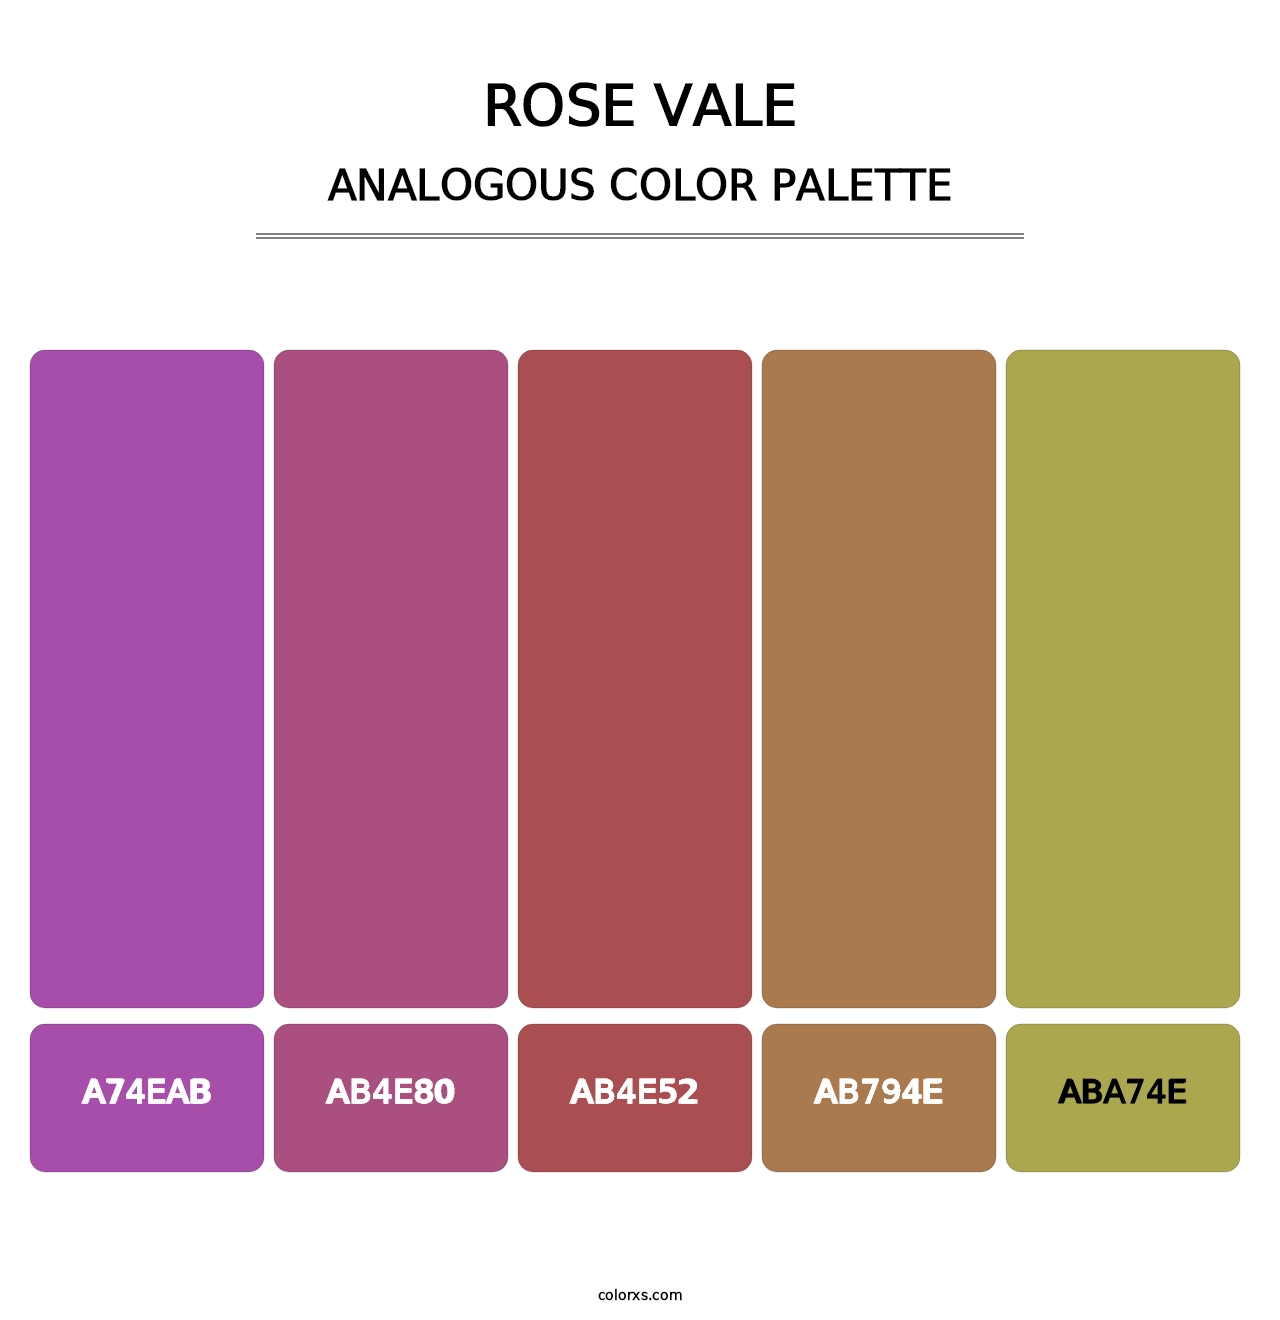 Rose Vale - Analogous Color Palette